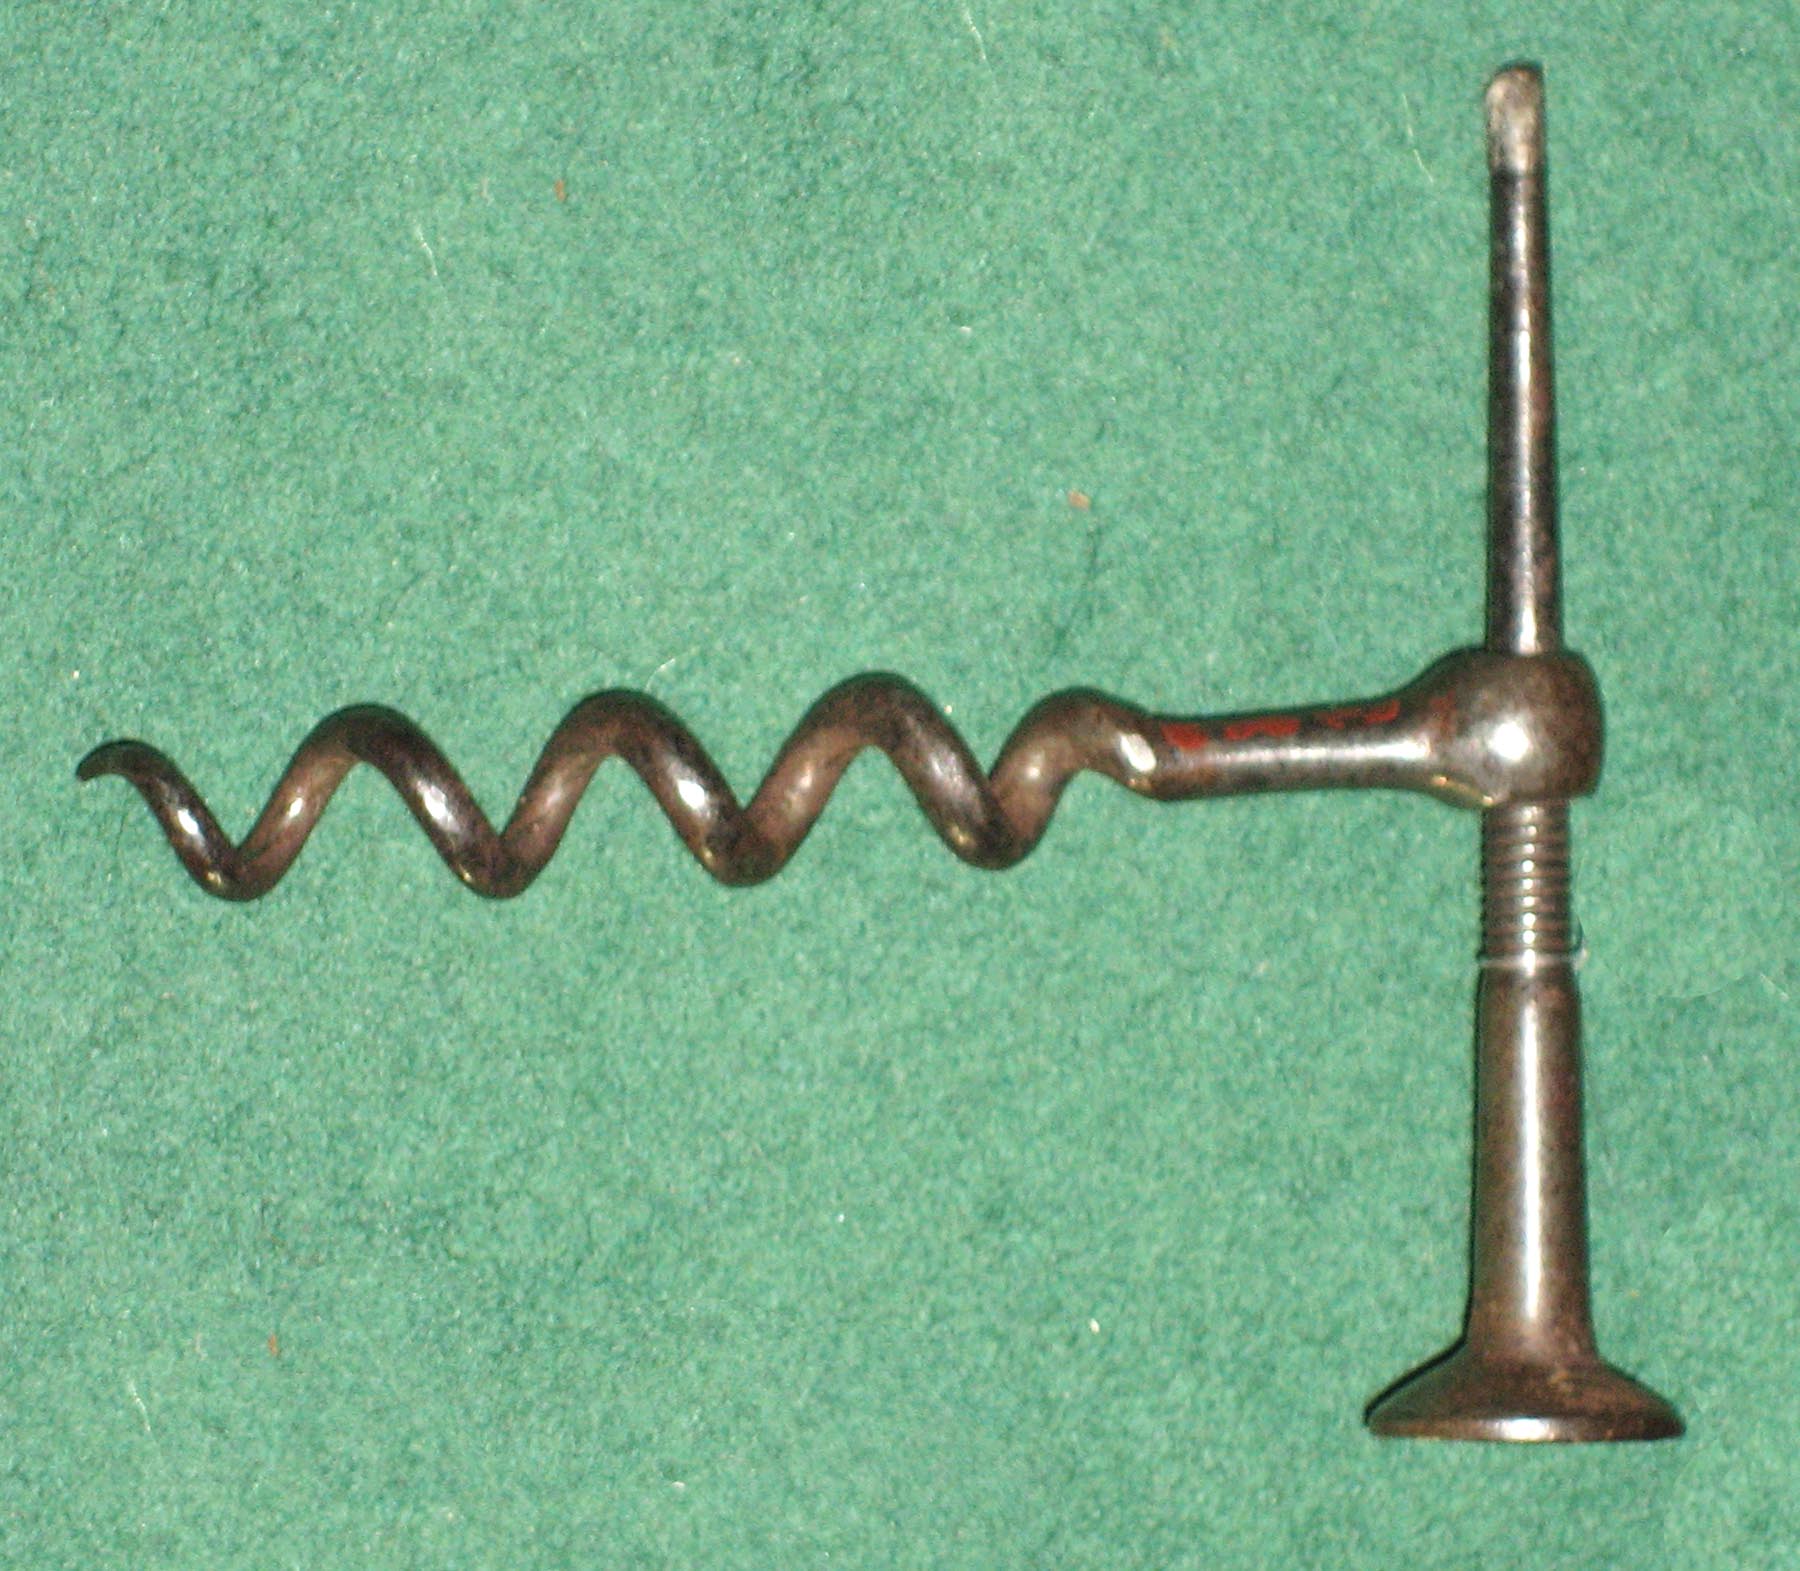 Metals - Corkscrew and pipe tamper